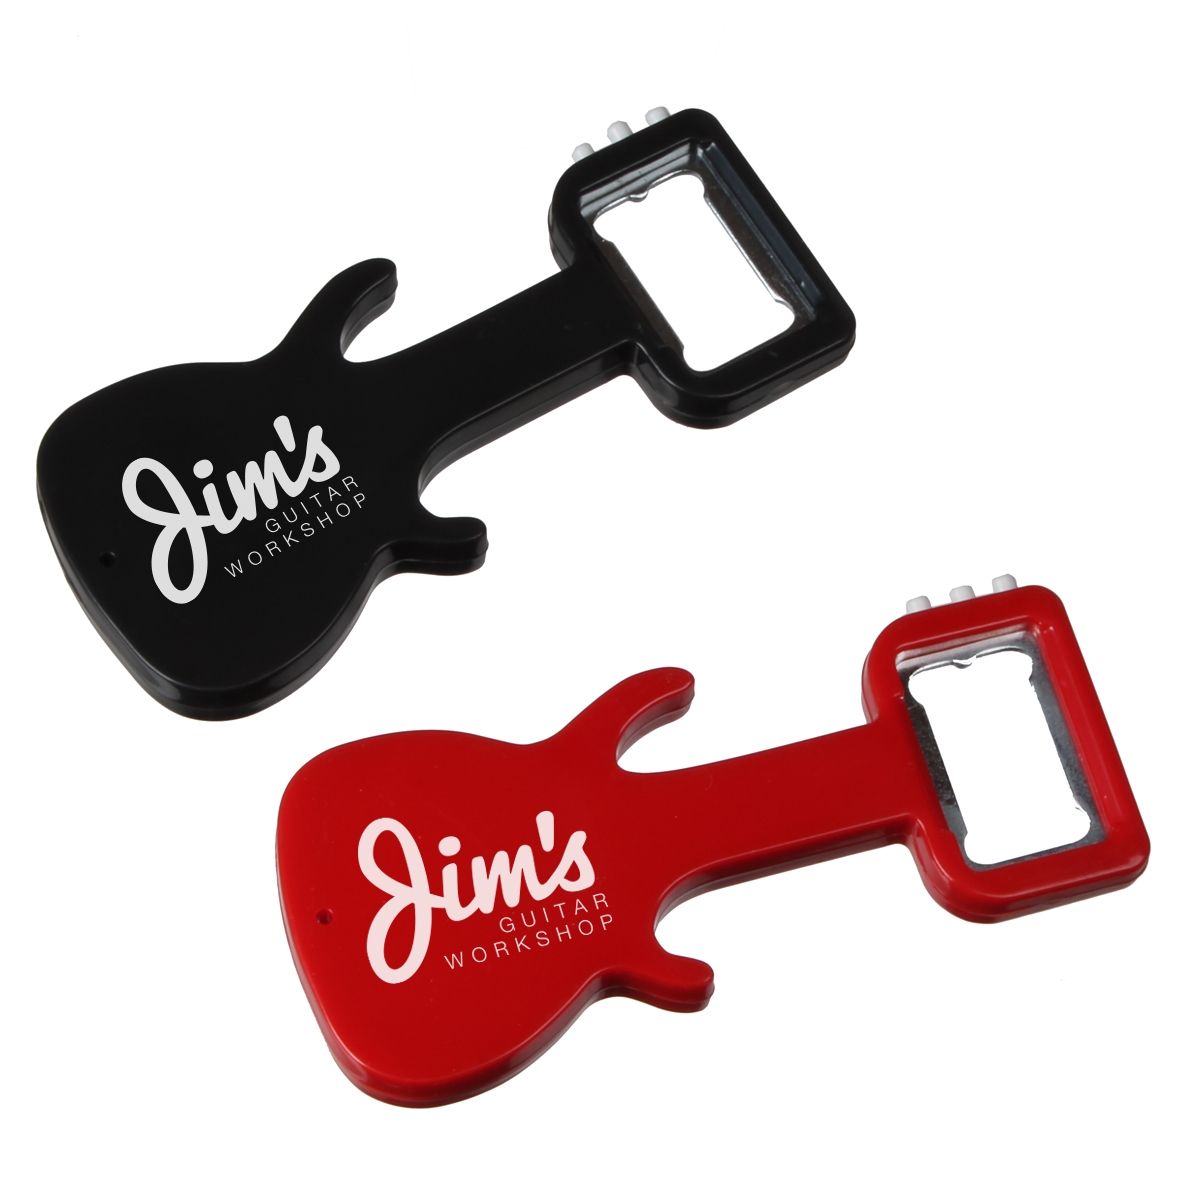 guitar bottle opener